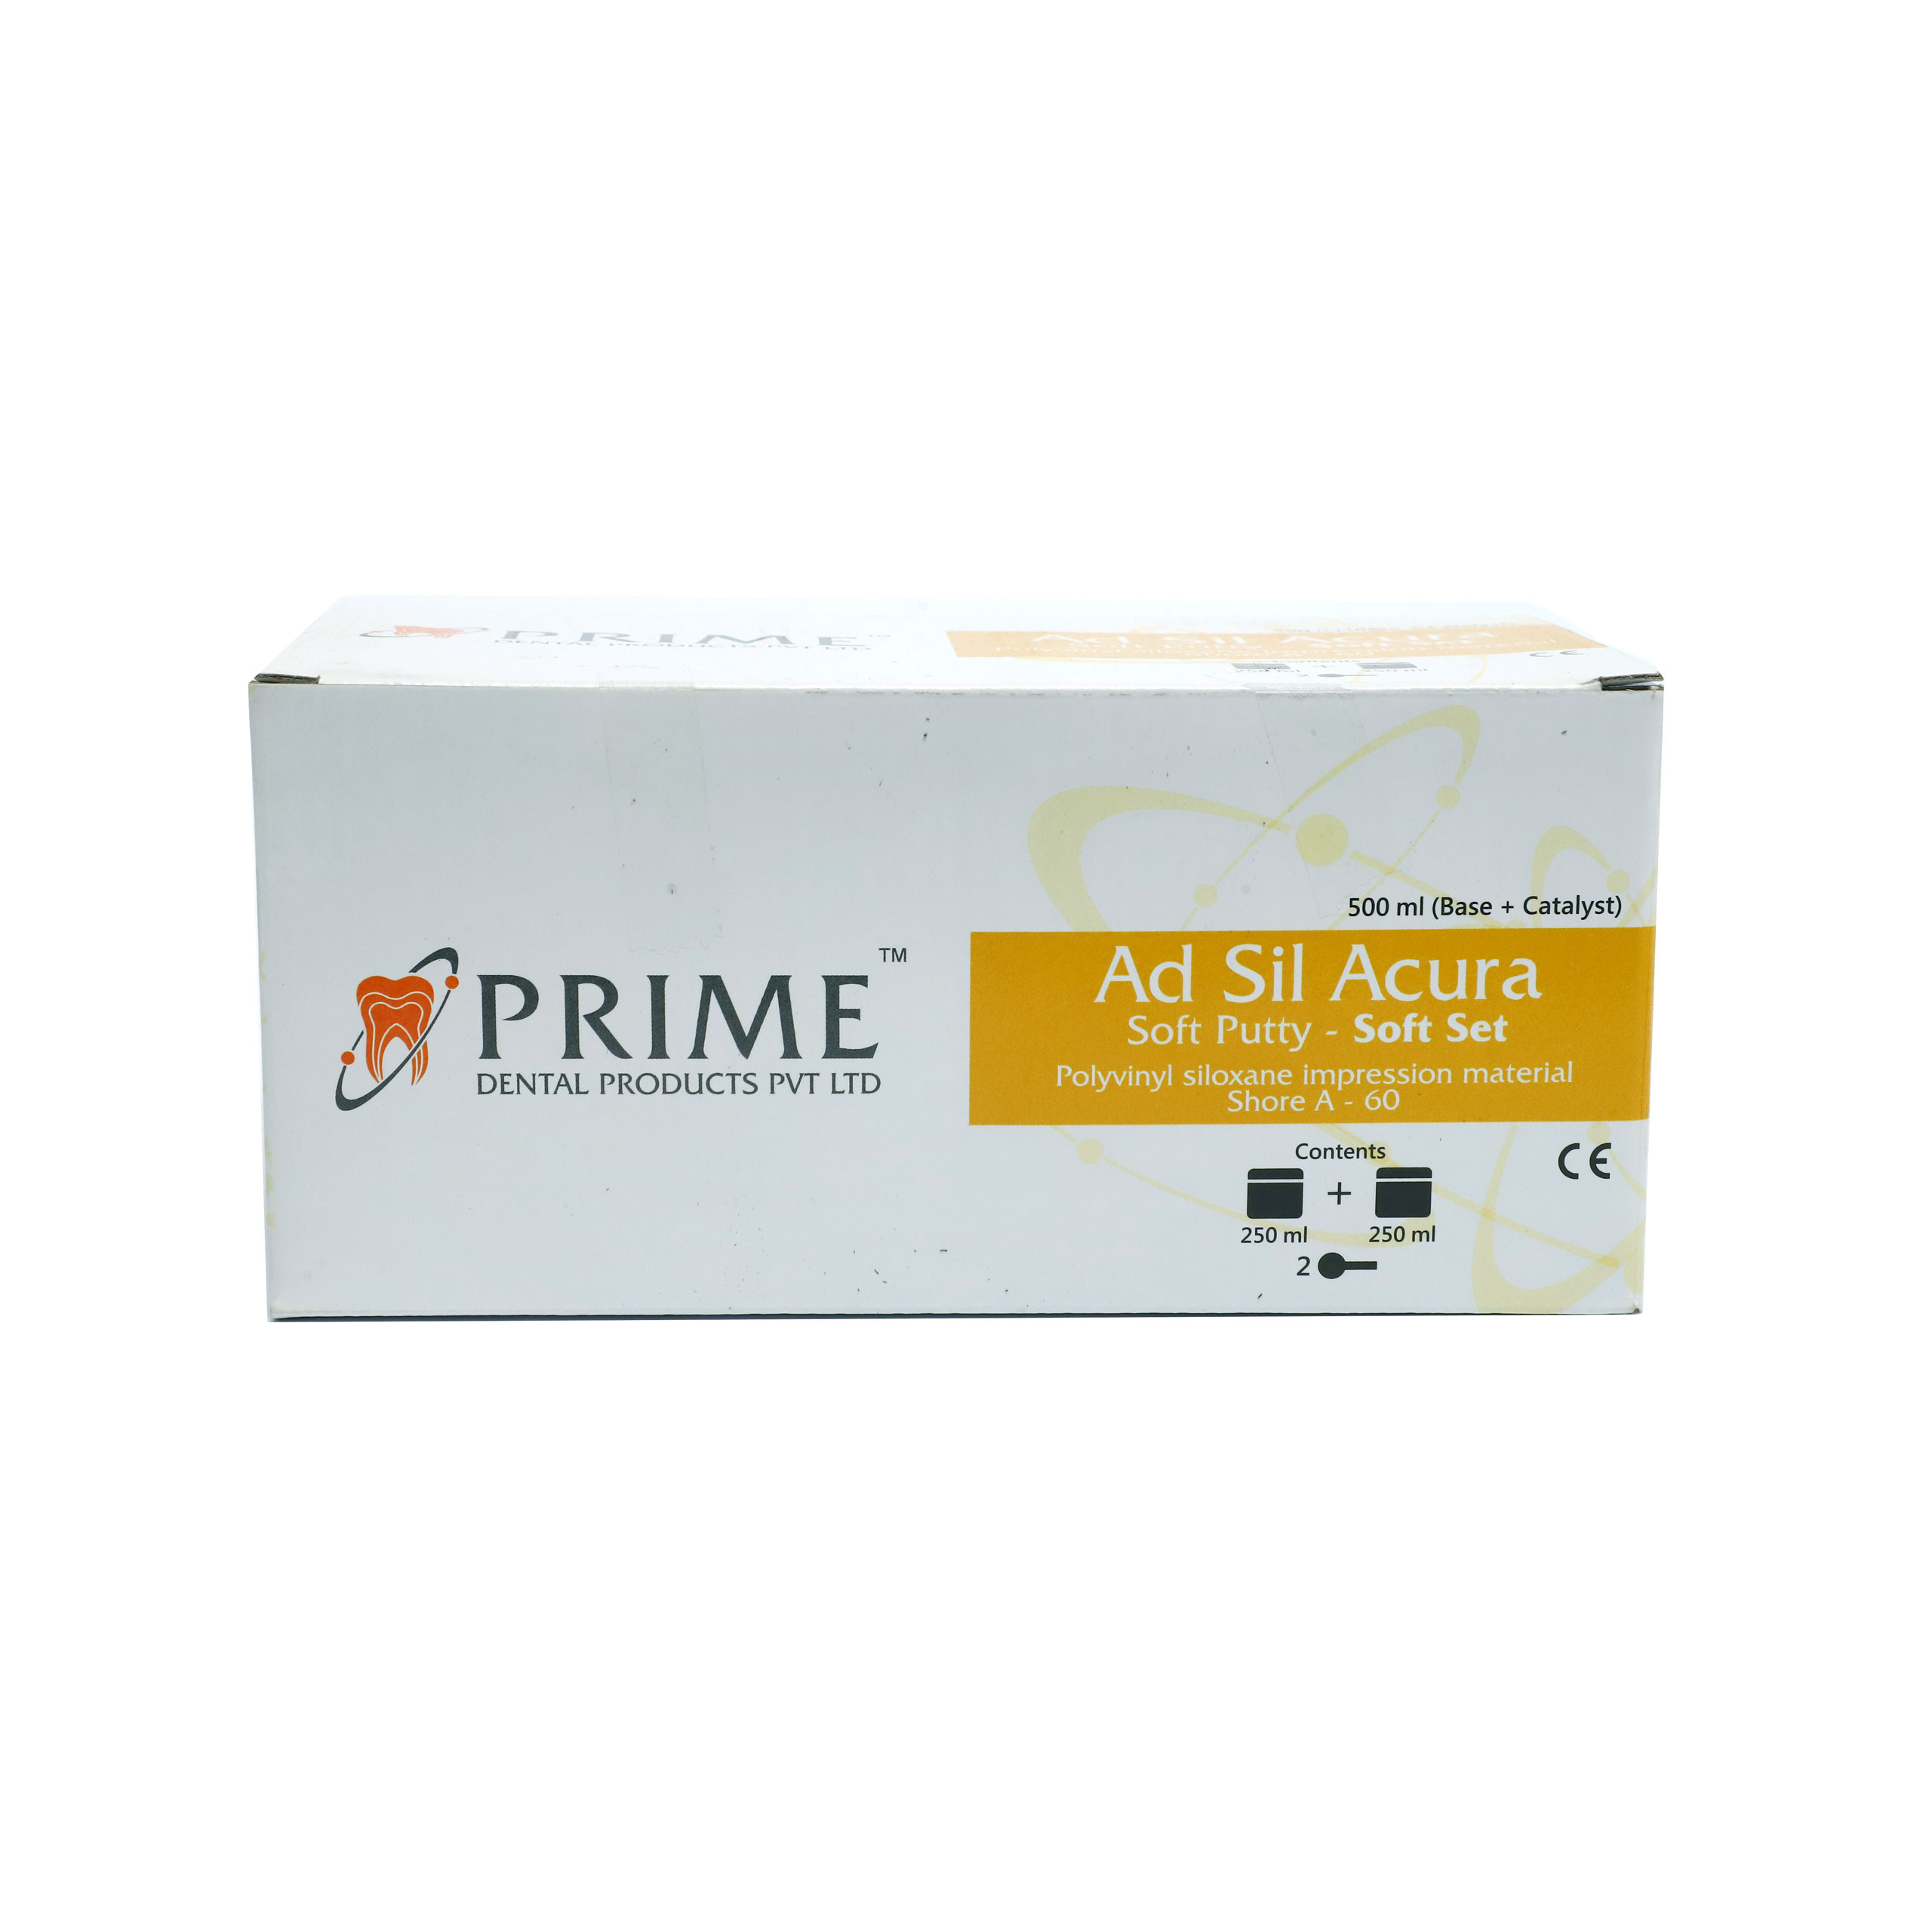 Prime Ad Sil Acura Kit